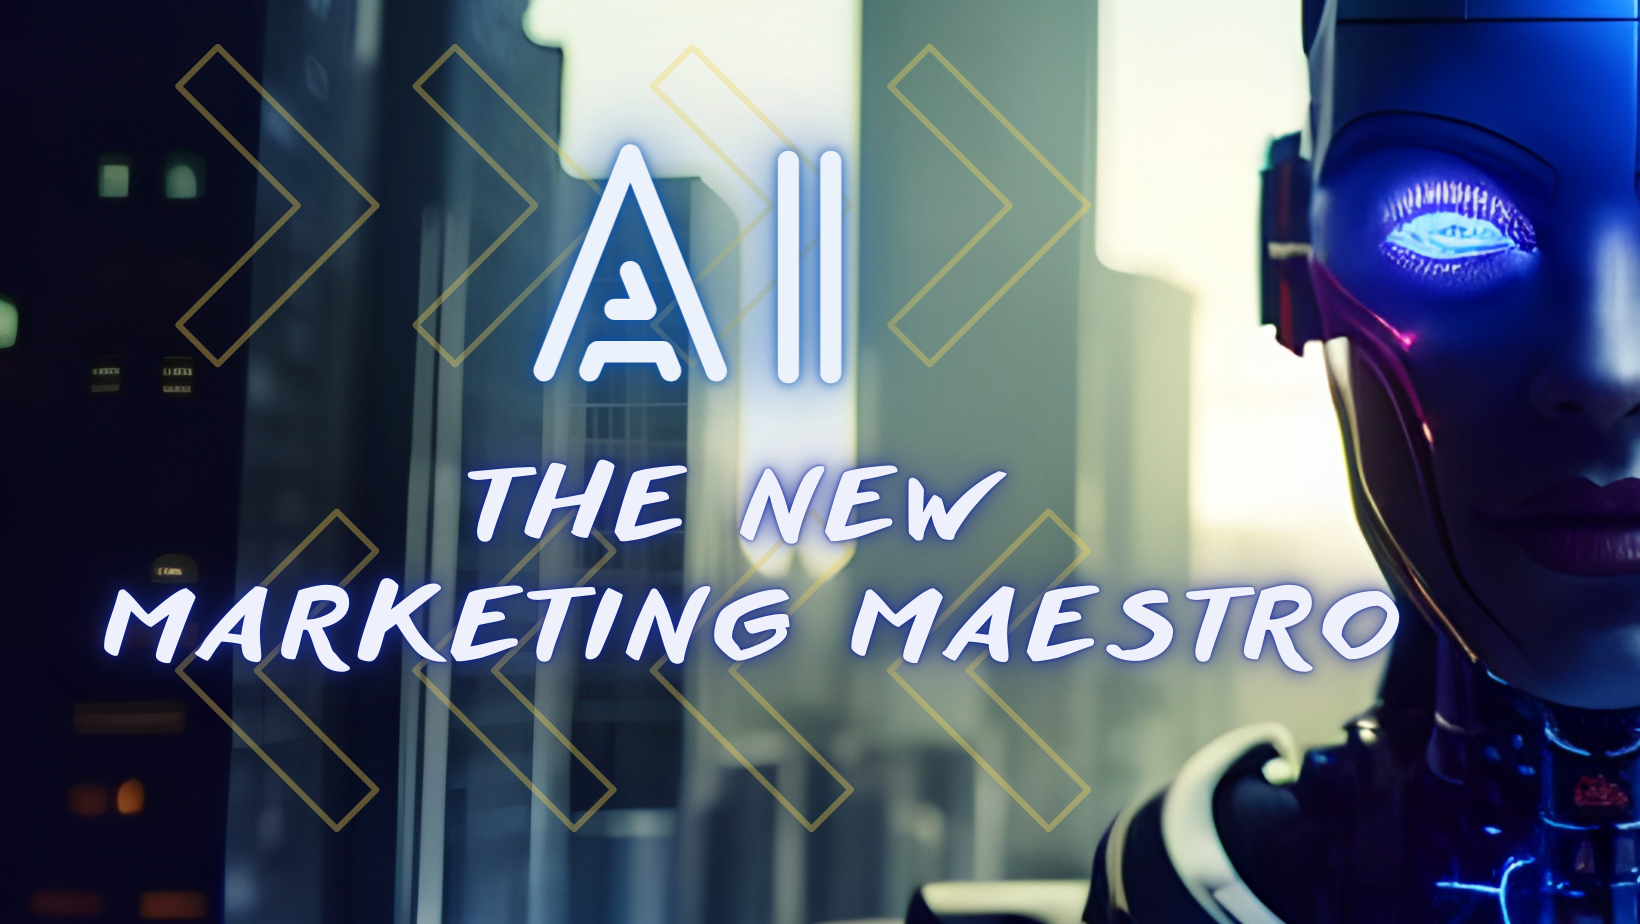 AI: The New Marketing Maestro